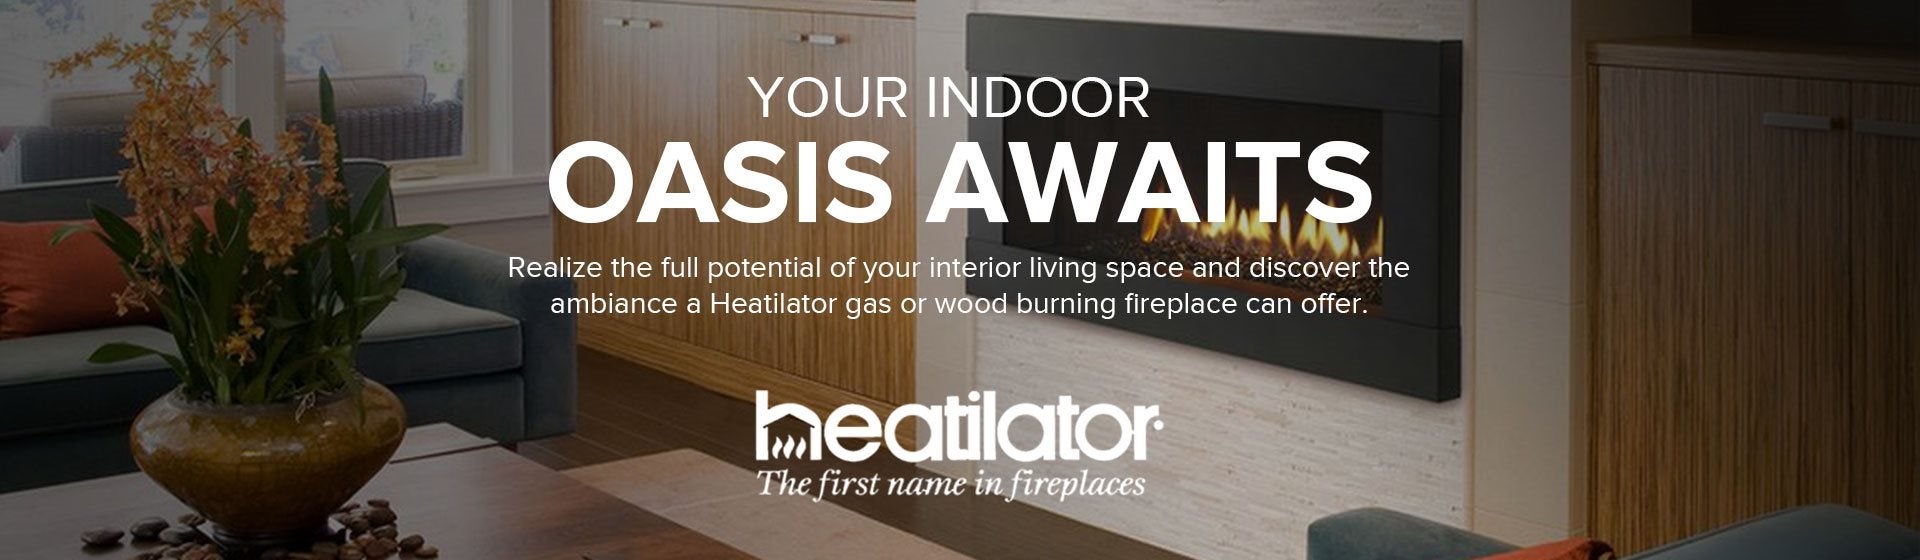 Your Indoor Oasis Awaits